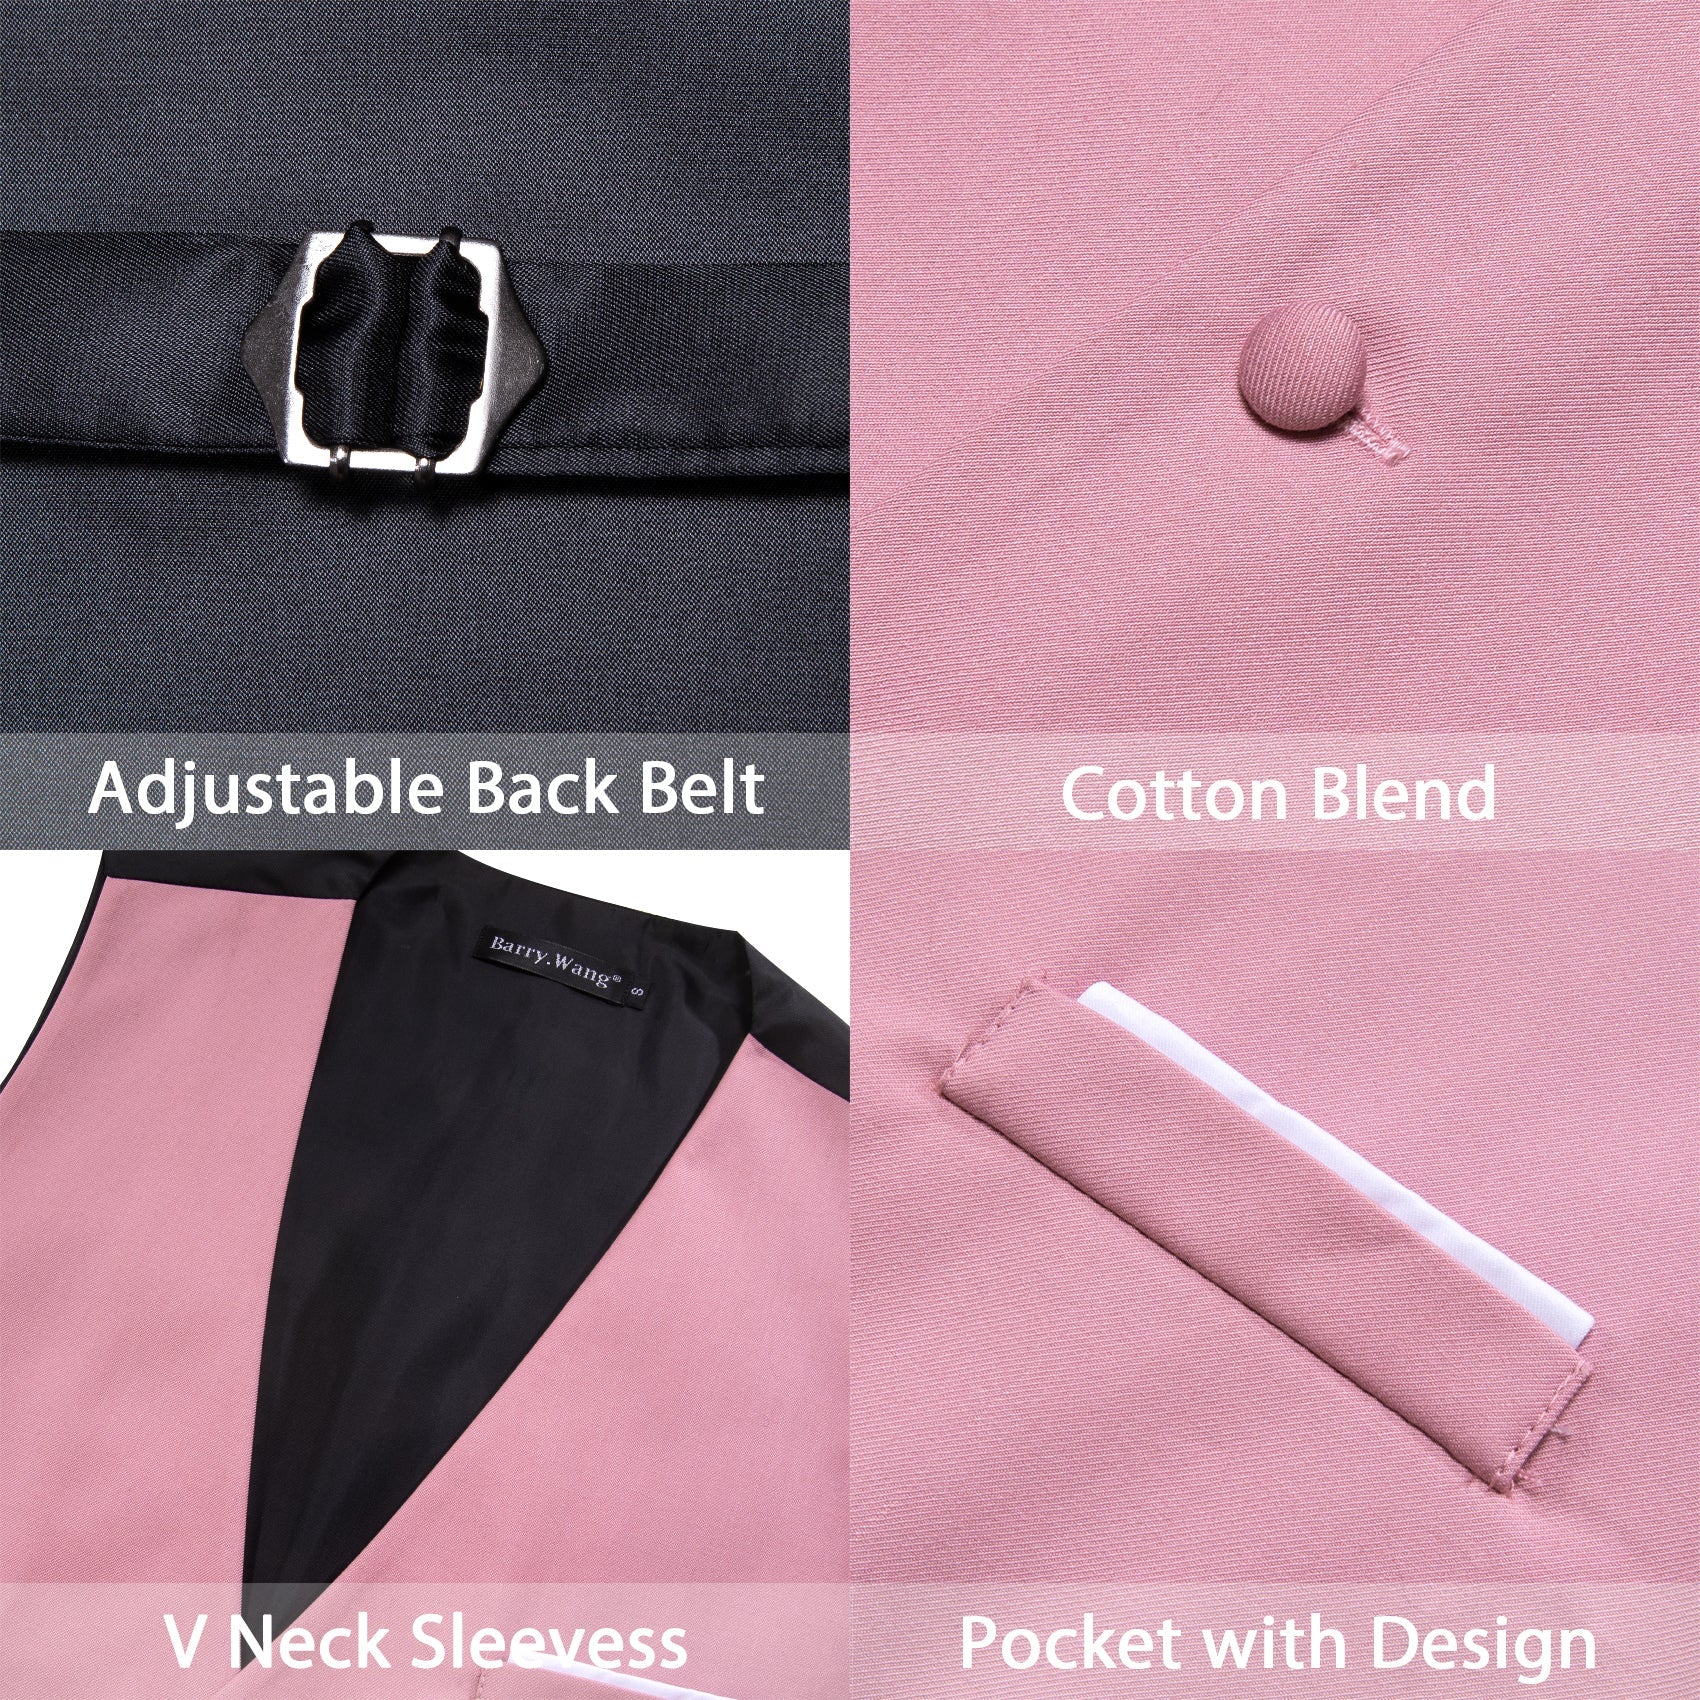 Pink Solid Necktie Bowtie Hanky Cufflinks Waistcoat Vest Set